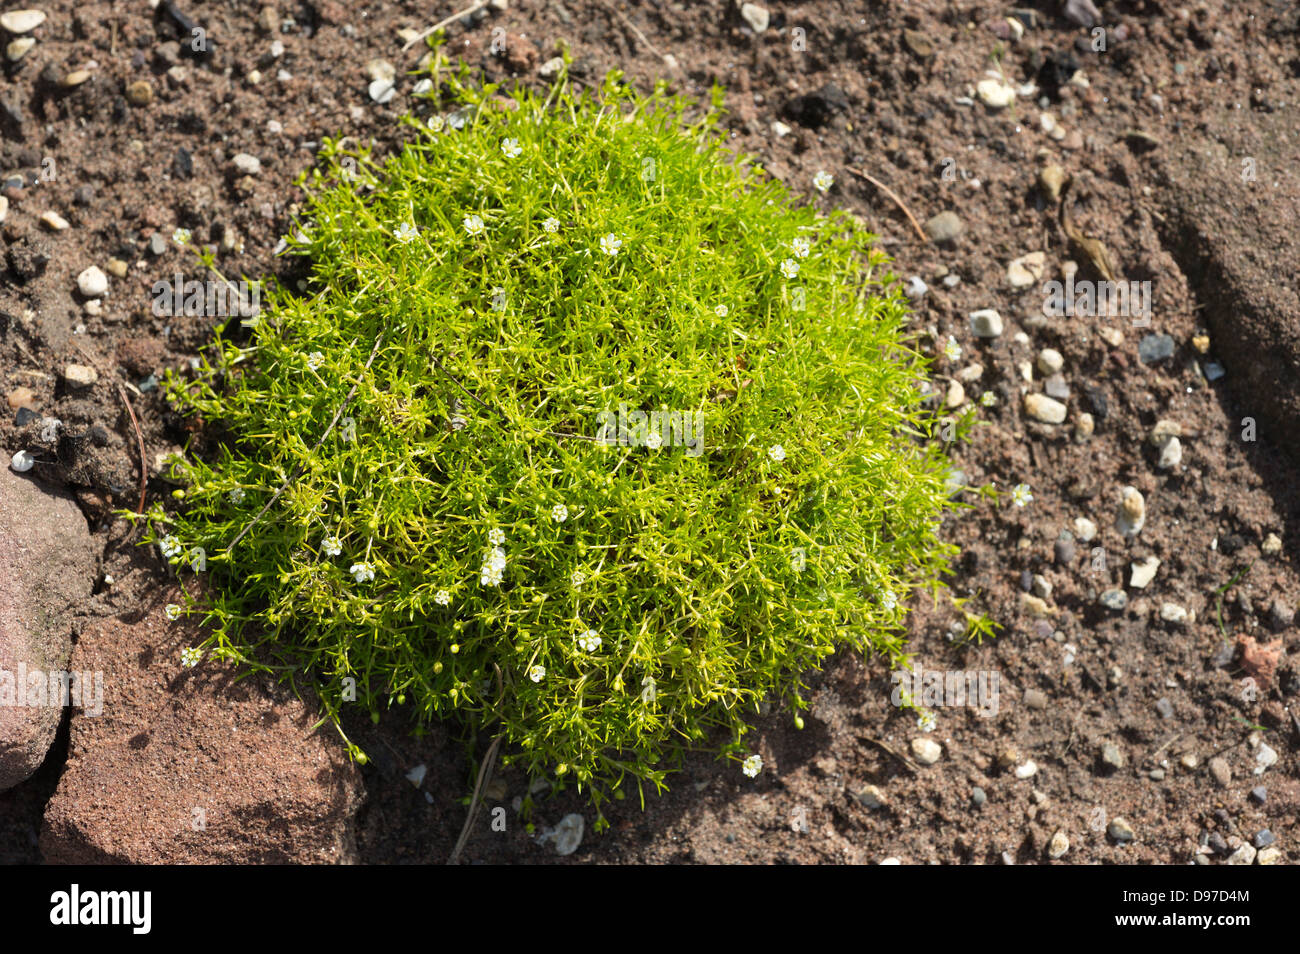 Arenaria caespitosa aurea - common name is Sandwort. Stock Photo